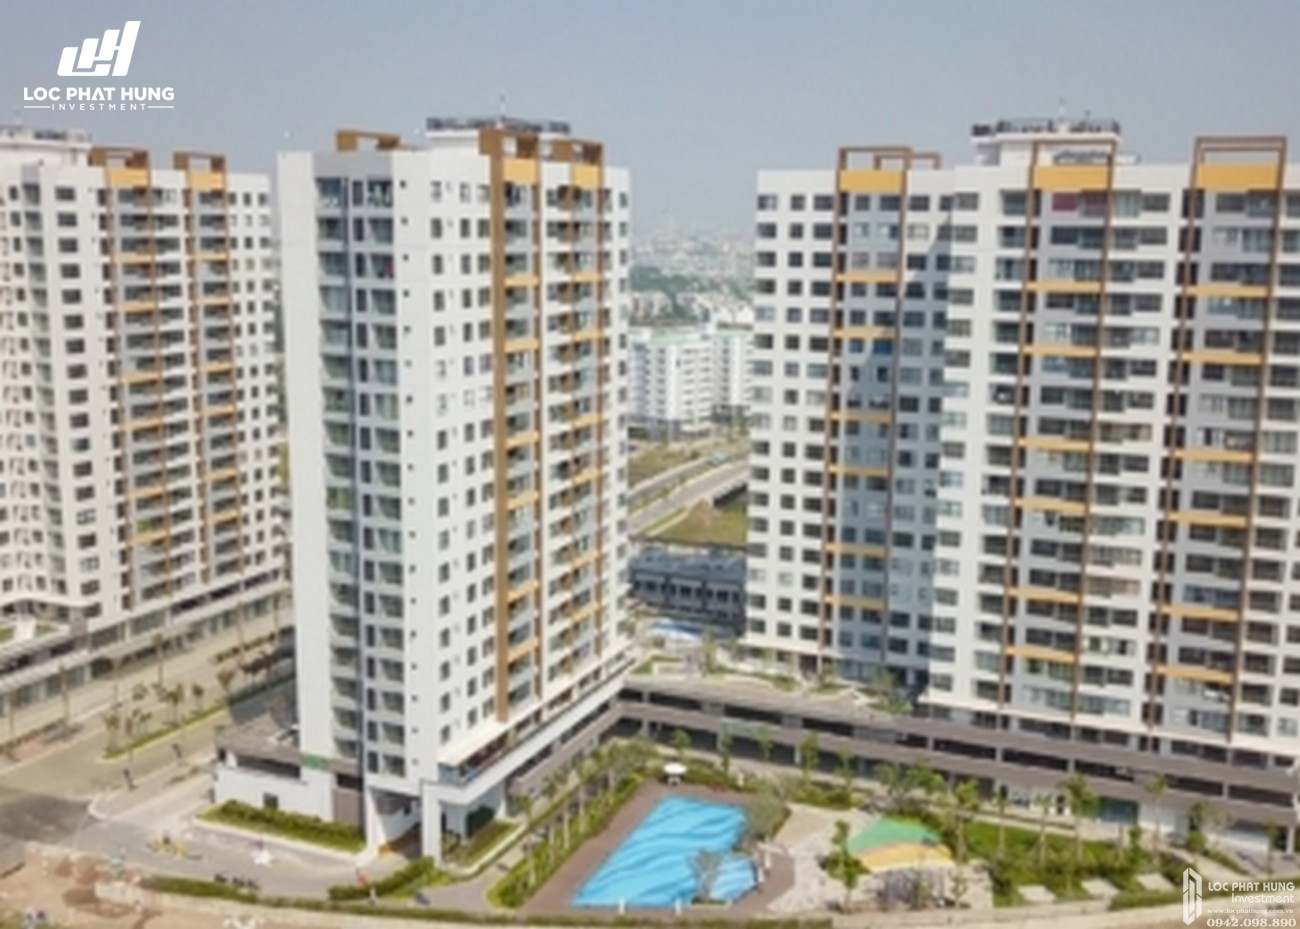 Tiến độ xây dựng dự án căn hộ chung cư Mizuki Park Bình Chánh tháng 02/2020